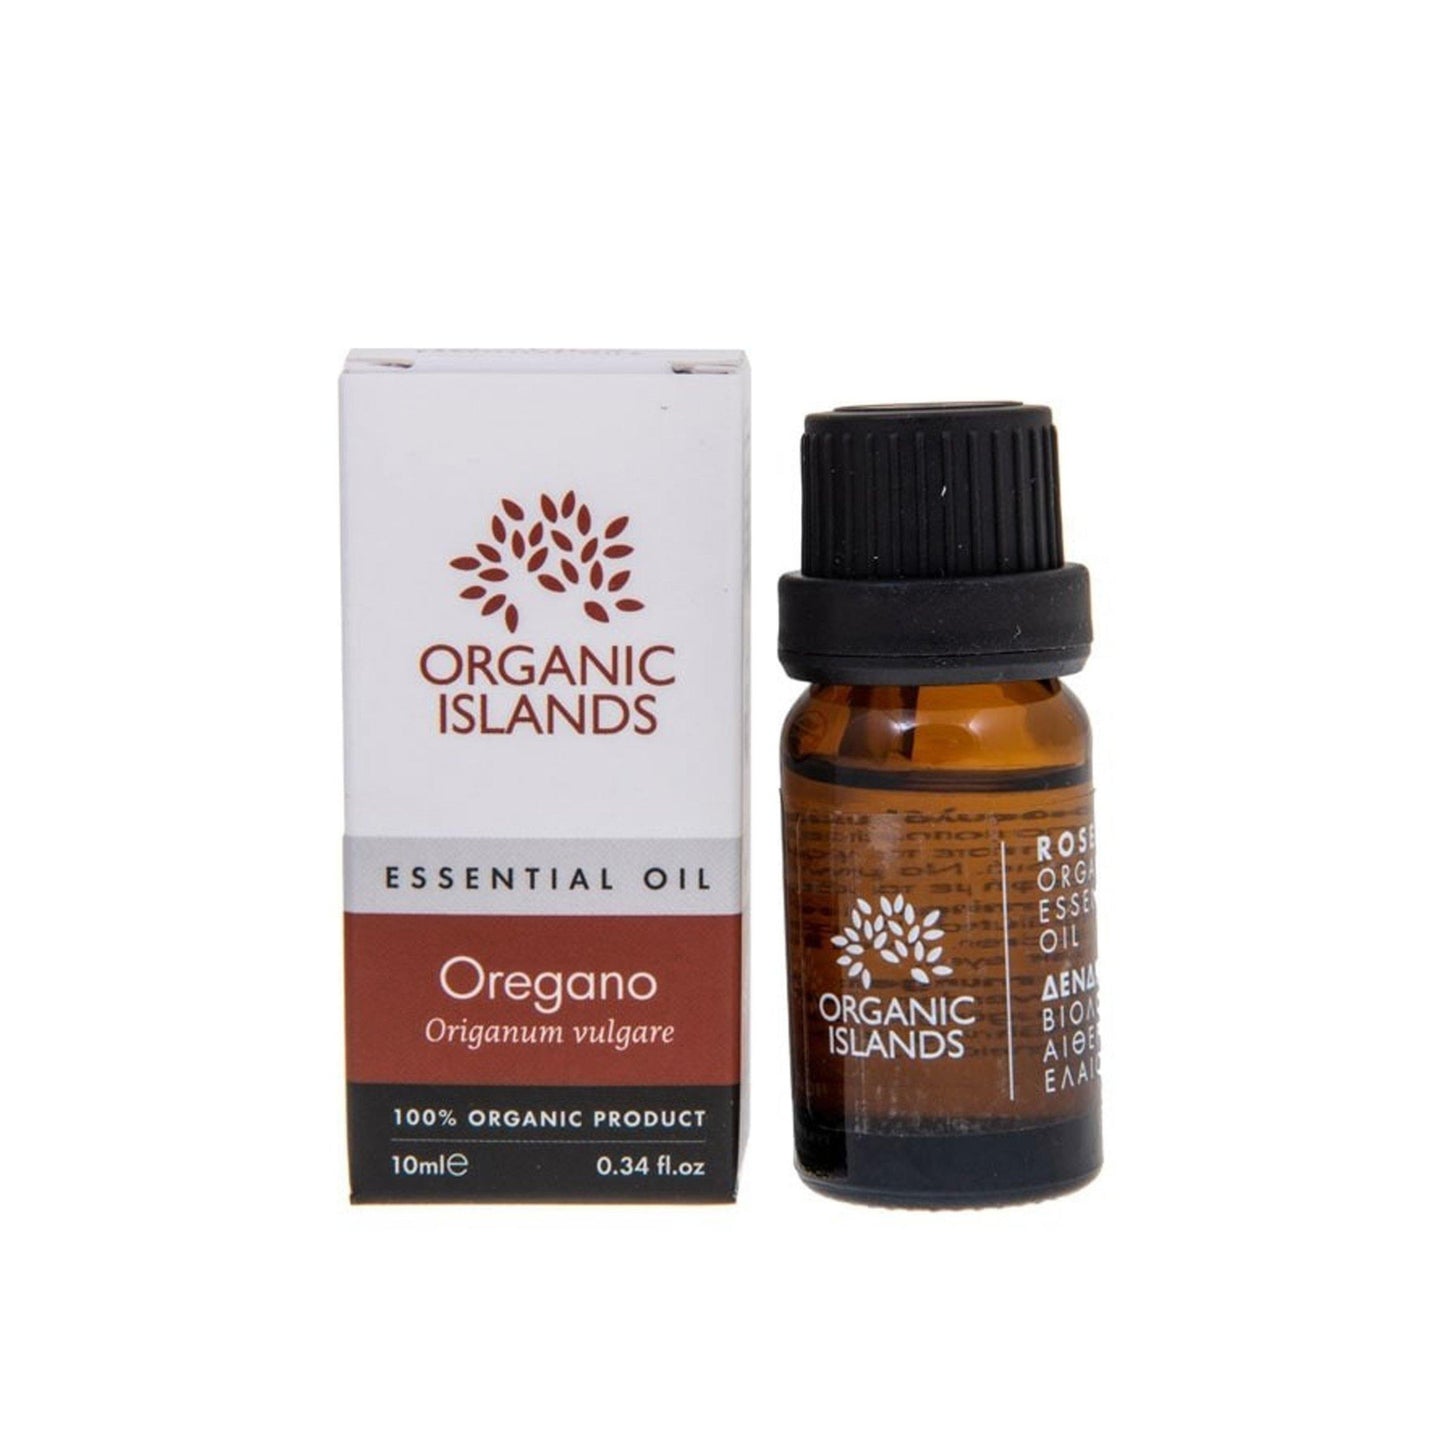 Organic oregano essential oil – 10ml